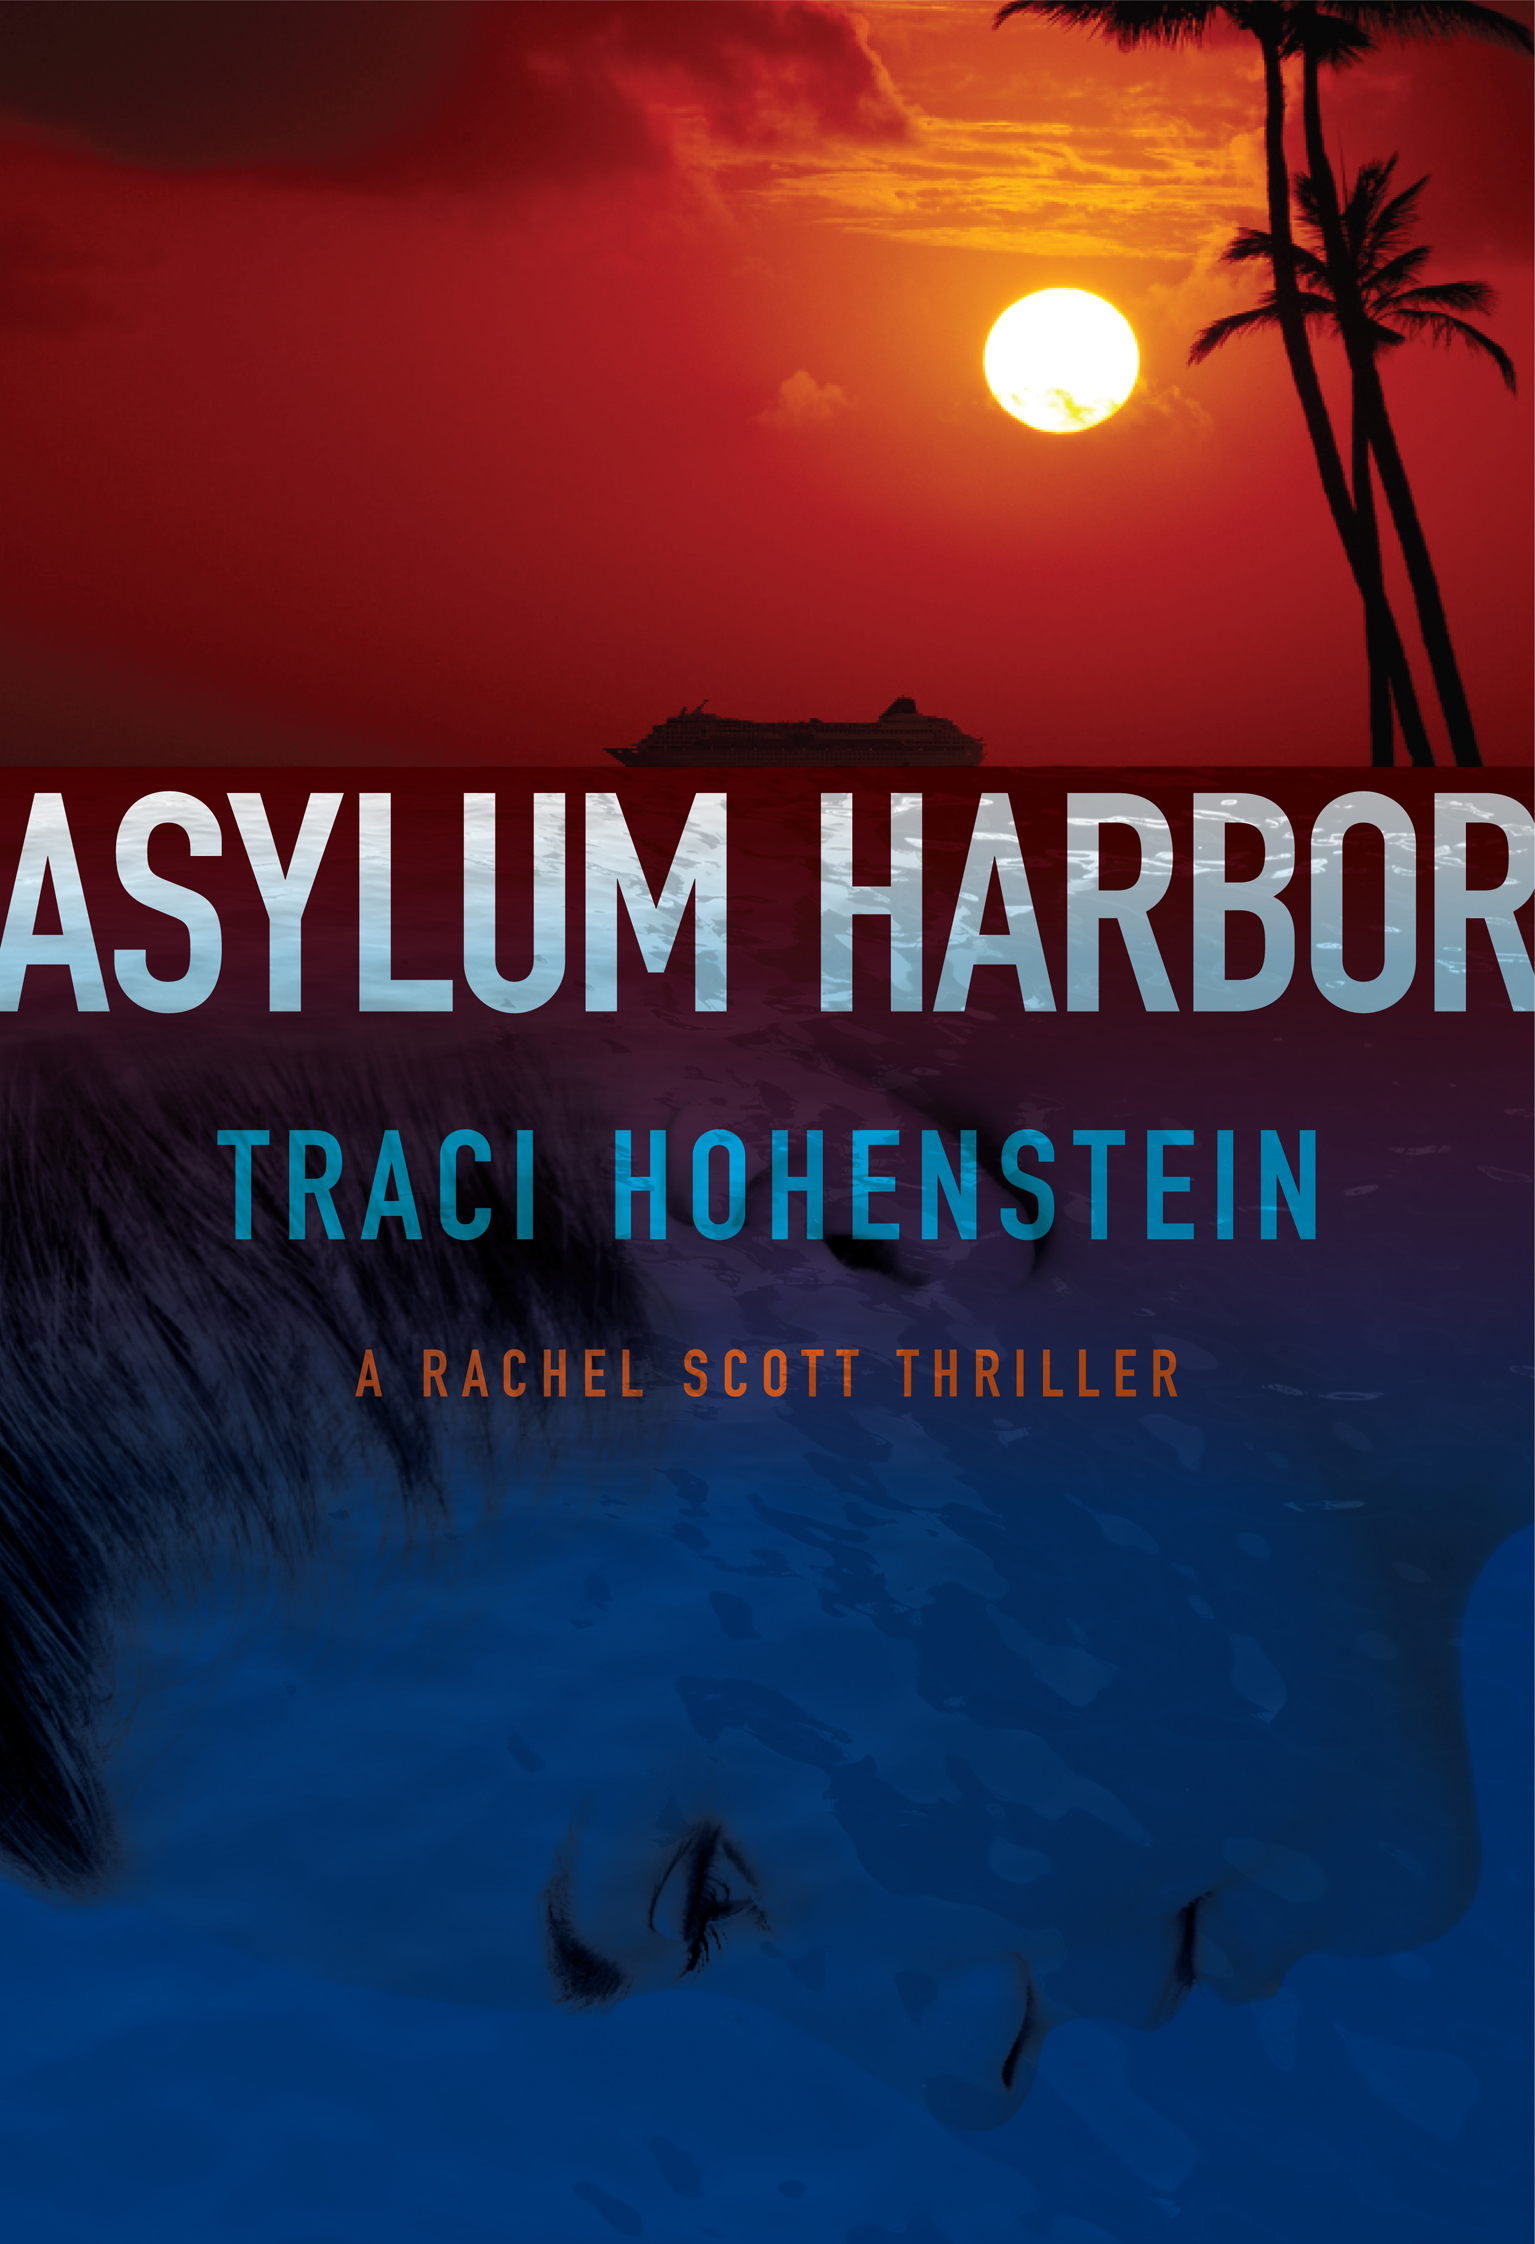 Asylum Harbor